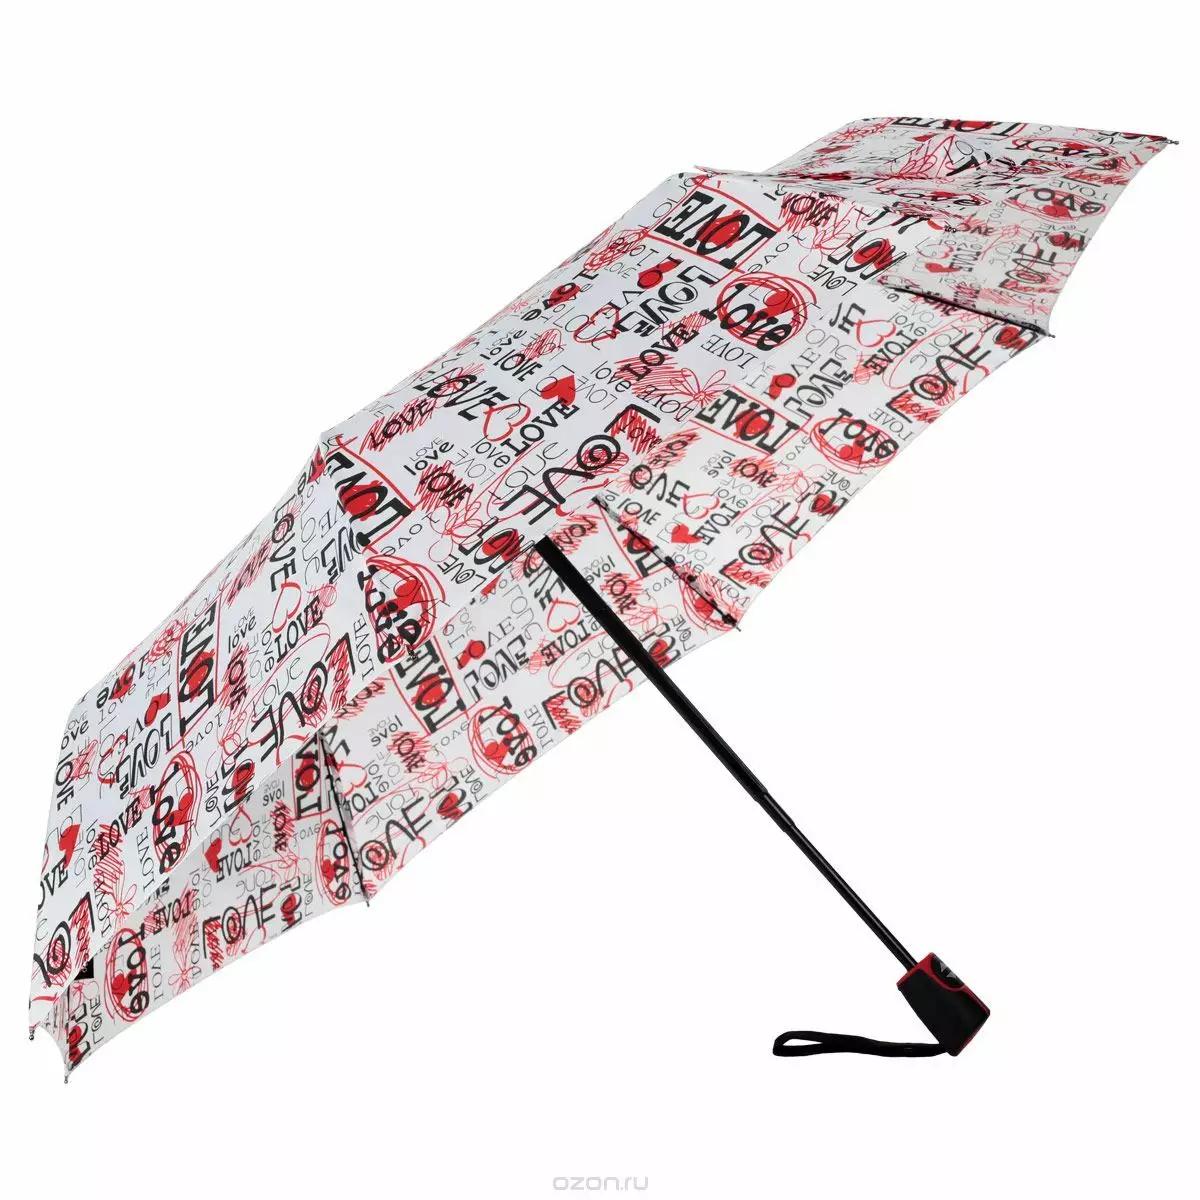 מטריות דופלר (60 תמונות): מקל שדוגמניות וקיפול, ביקורות דופלר 15227_12